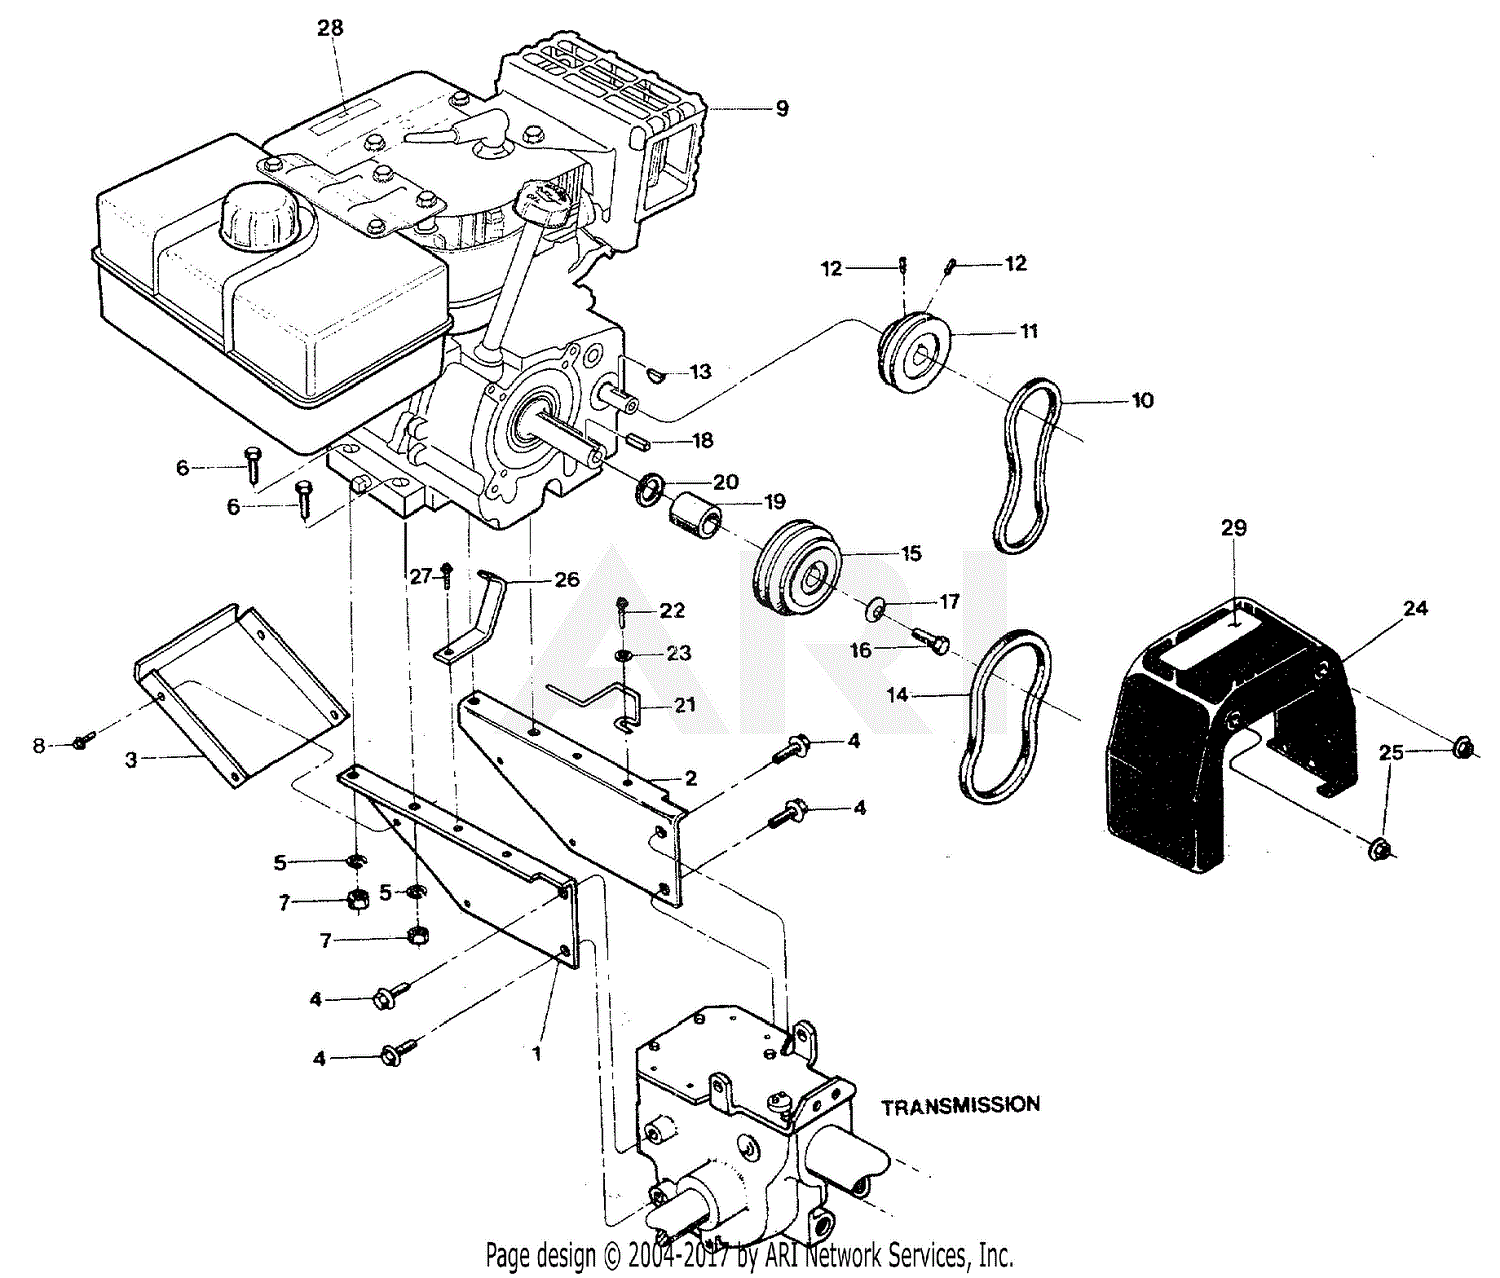 troy bilt bronco parts diagram